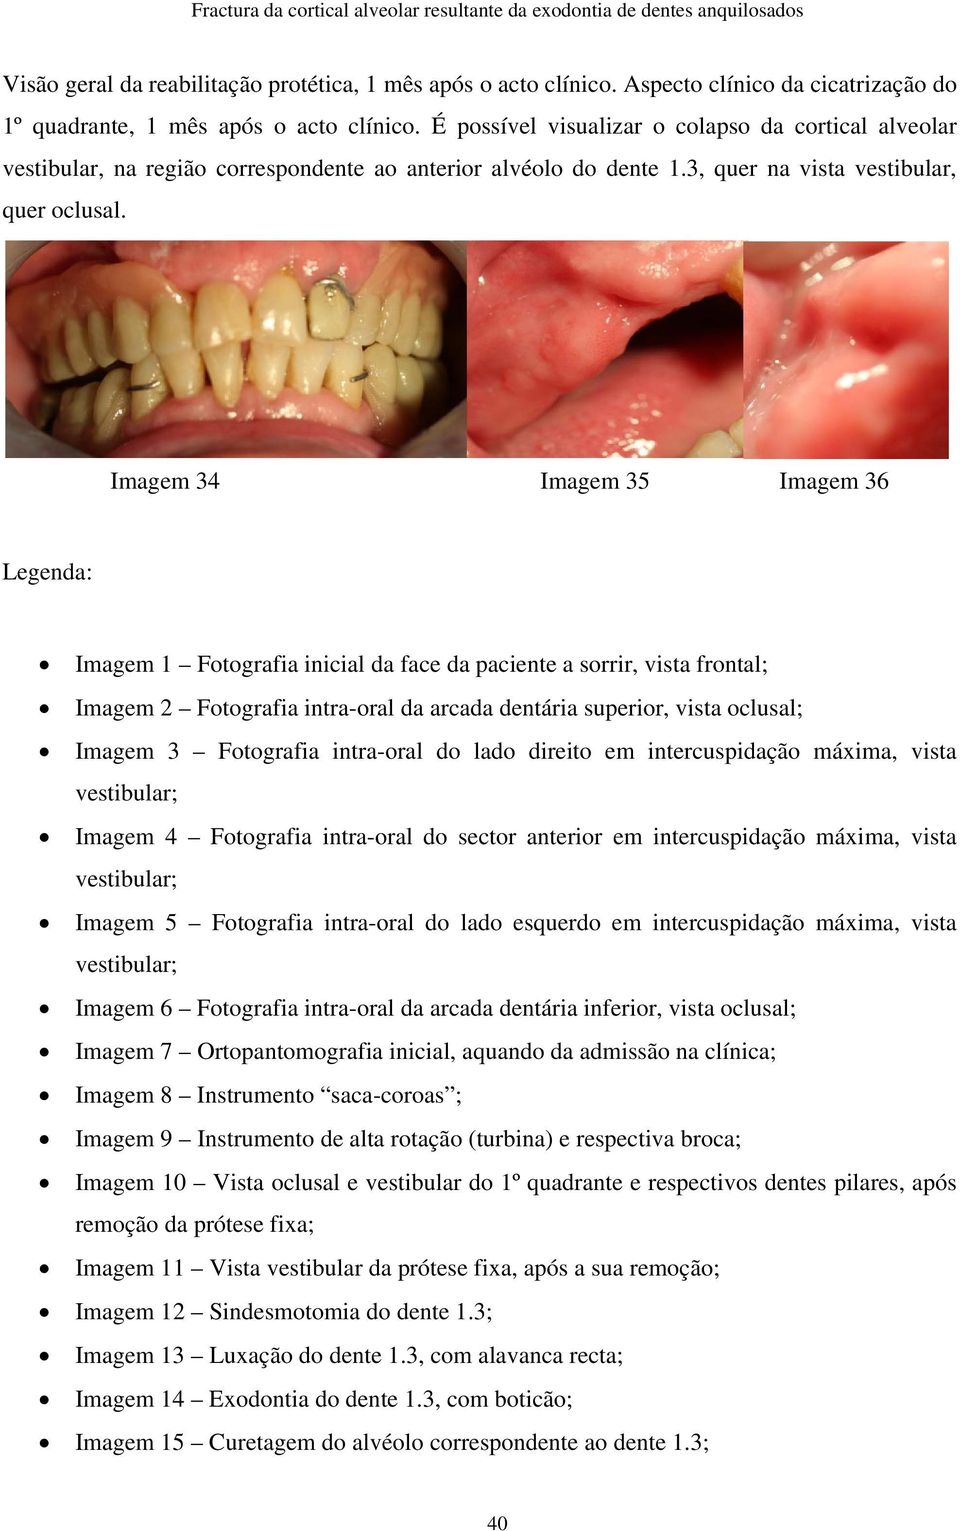 Imagem 34 Imagem 35 Imagem 36 Legenda: Imagem 1 Fotografia inicial da face da paciente a sorrir, vista frontal; Imagem 2 Fotografia intra-oral da arcada dentária superior, vista oclusal; Imagem 3